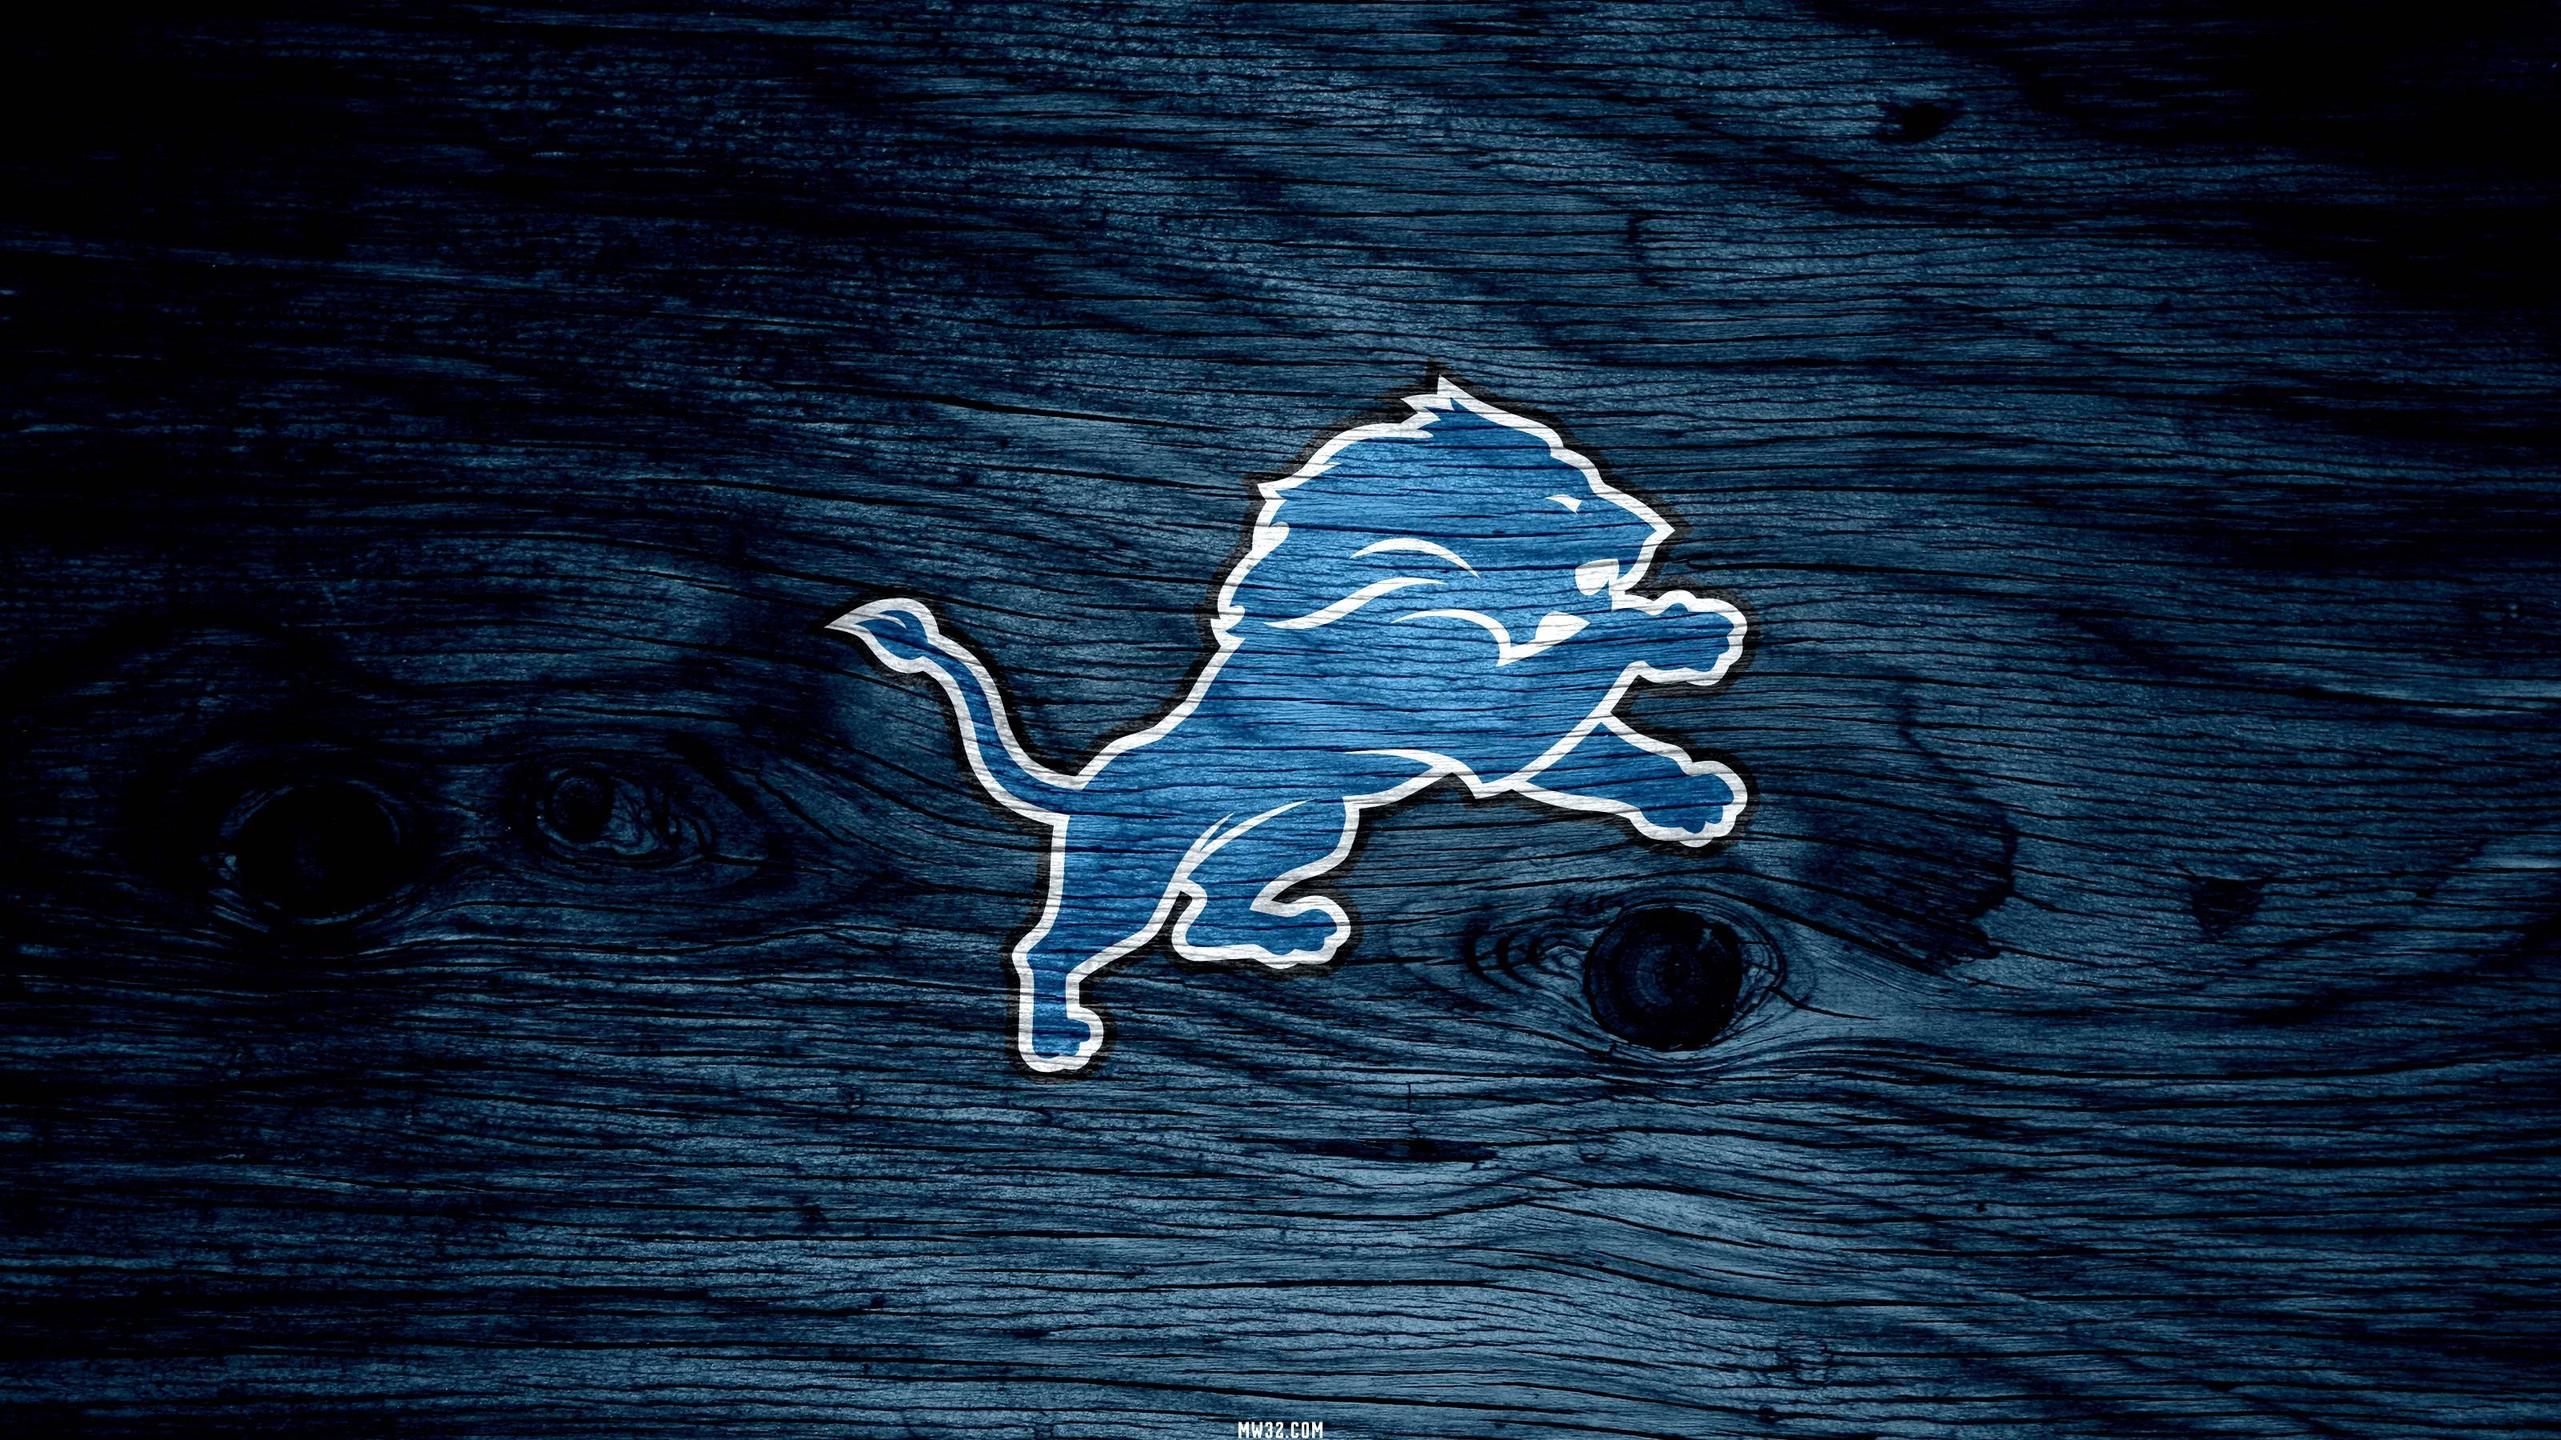 Detroit Lions Wallpaper Background